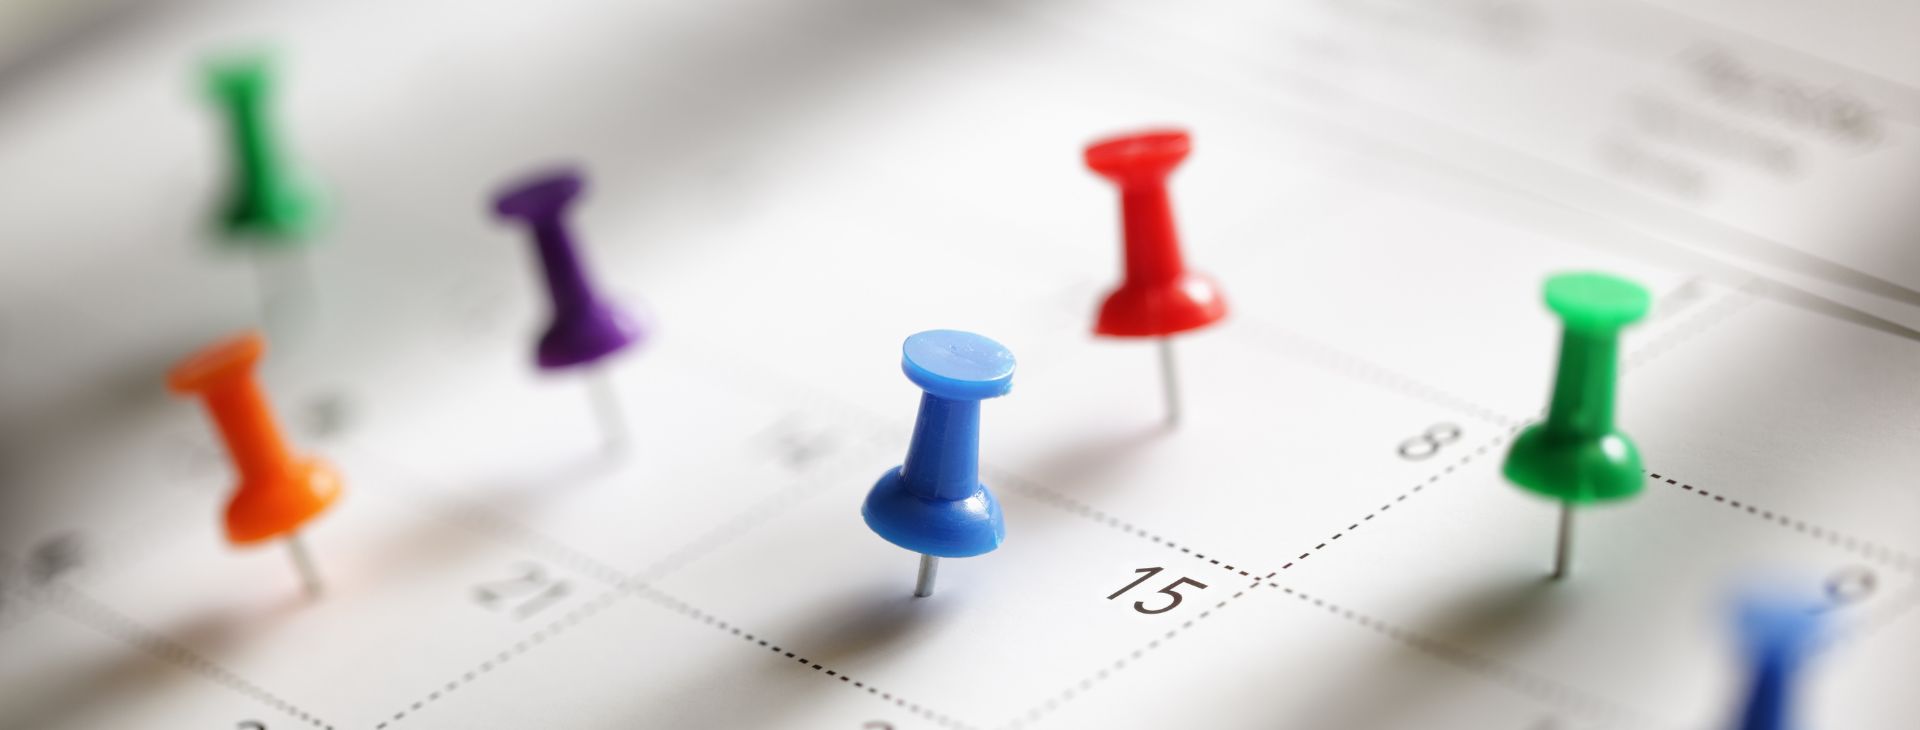 Knappnålar vid en kalender för att markera viktiga datum.